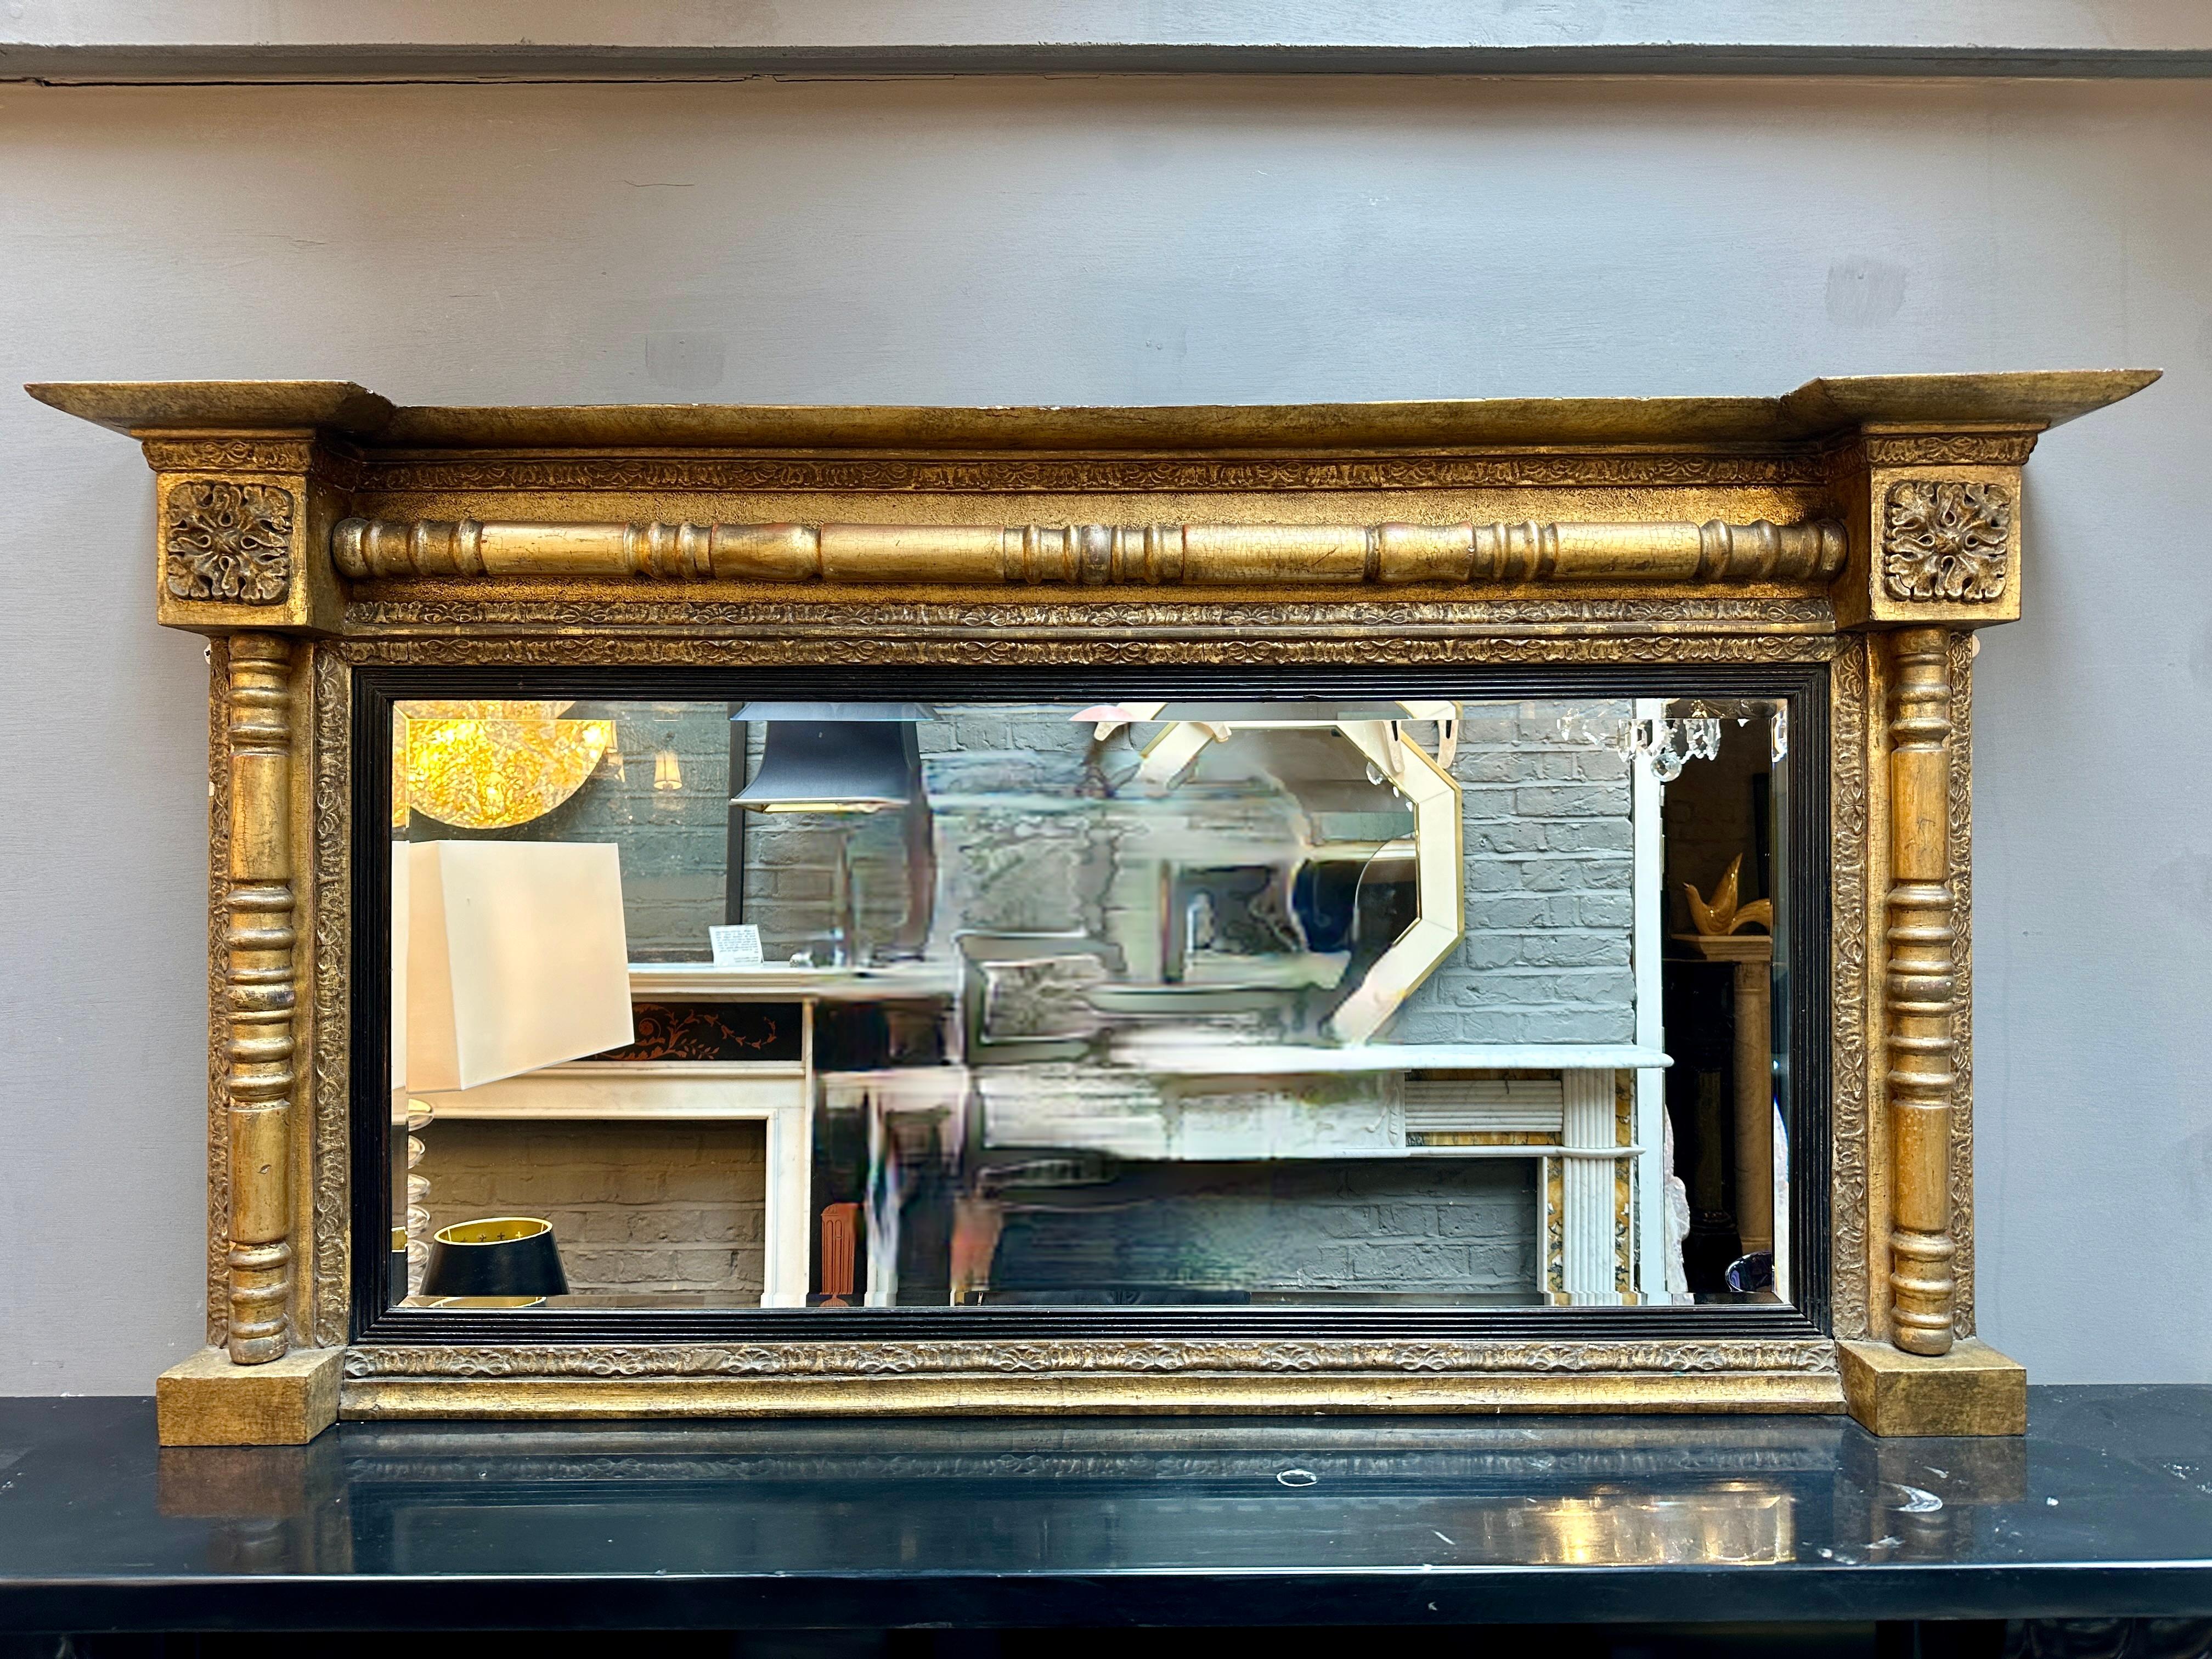 Miroir de style Régence en bois doré, datant du début du 19e siècle, avec sa plaque biseautée en verre d'origine et sa plaque intérieure ébénisée et cannelée.
Le cadre avec le fronton brisé, les coins carrés de Patarae, la décoration en langue